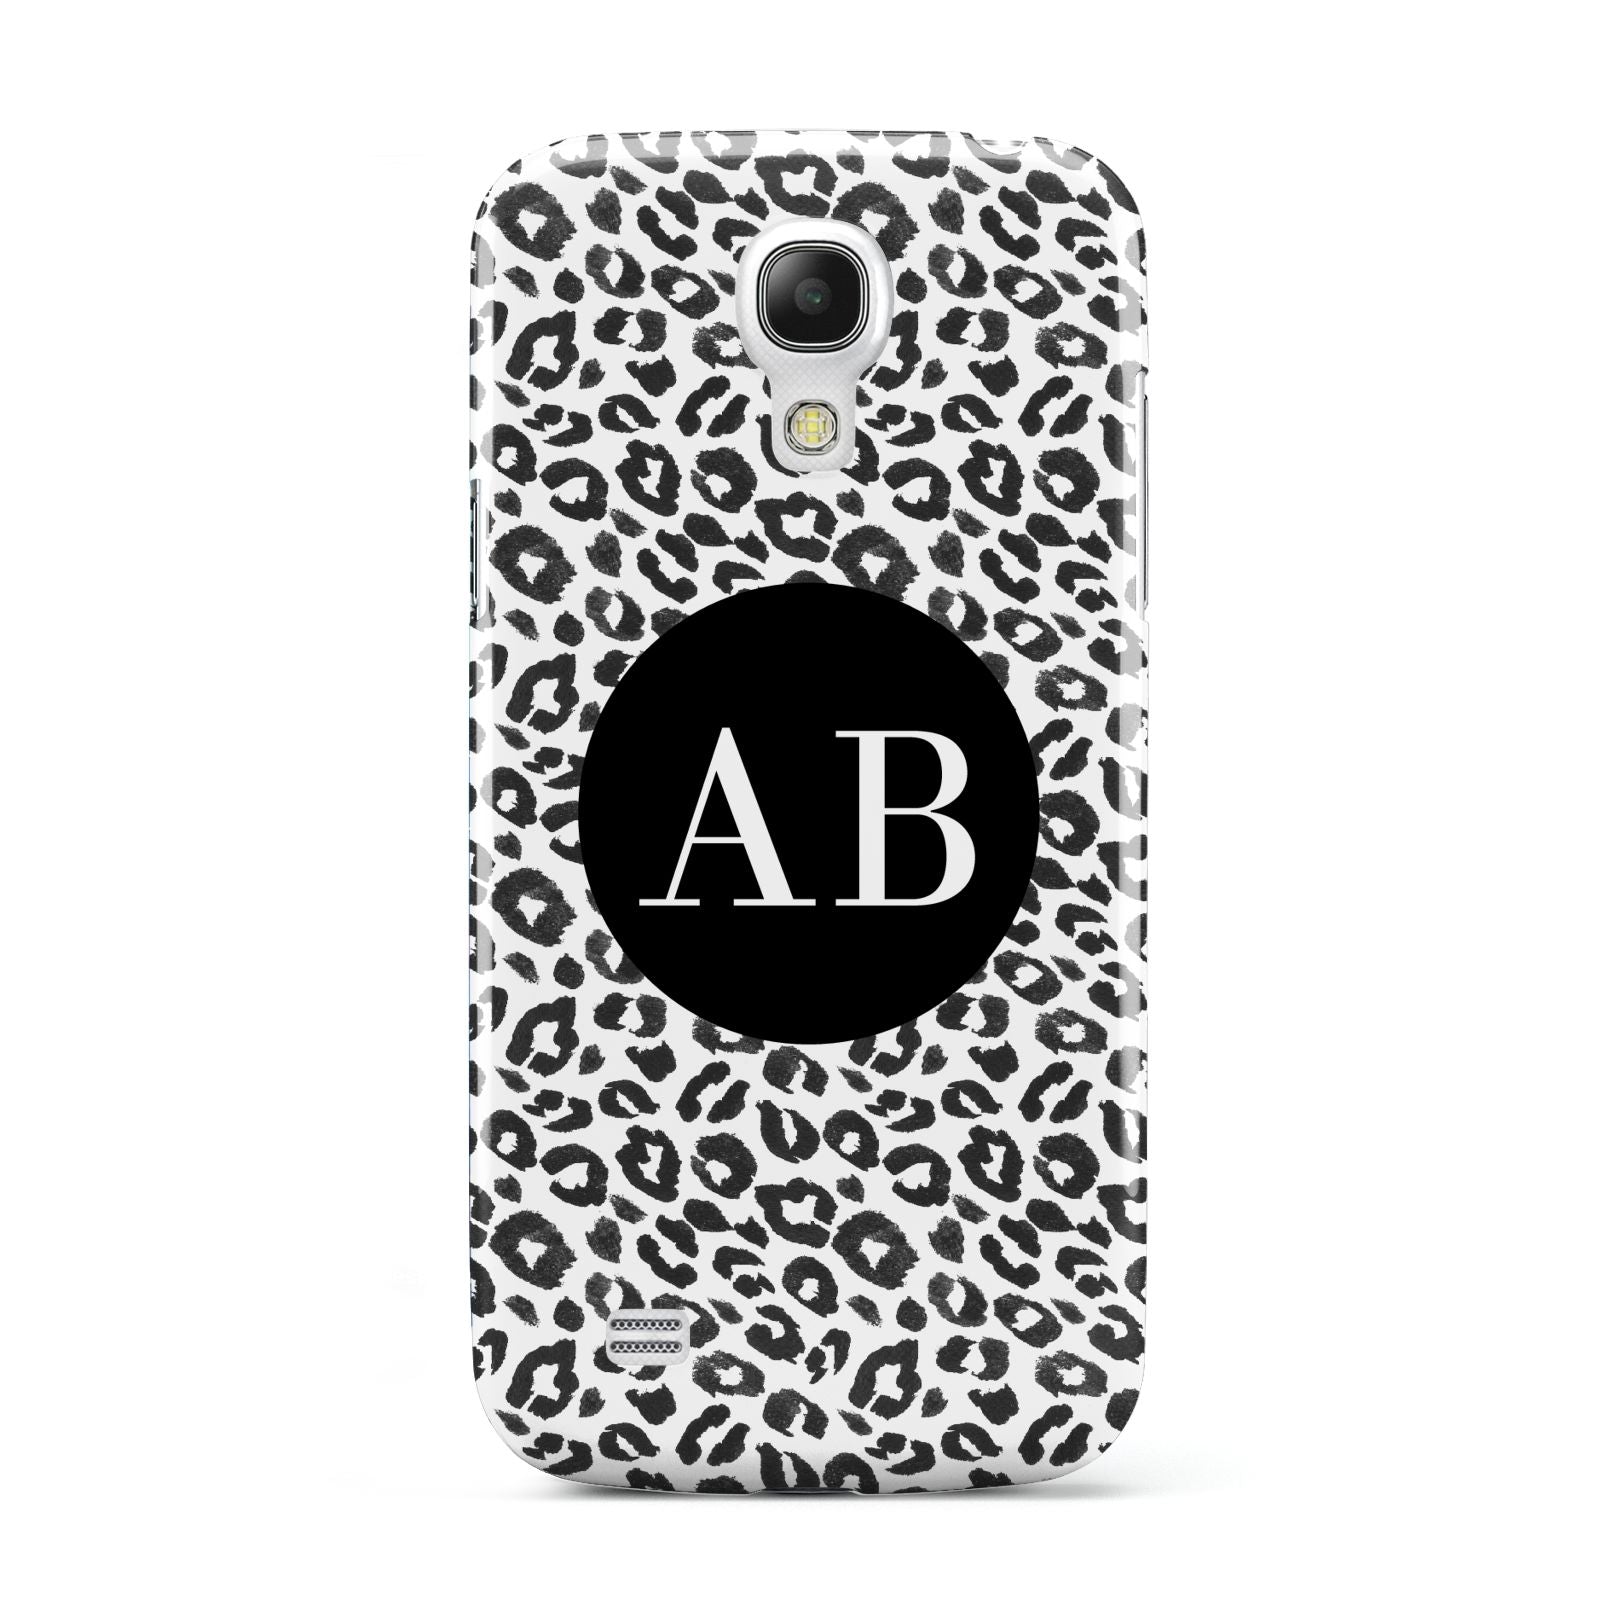 Leopard Print Black and White Samsung Galaxy S4 Mini Case